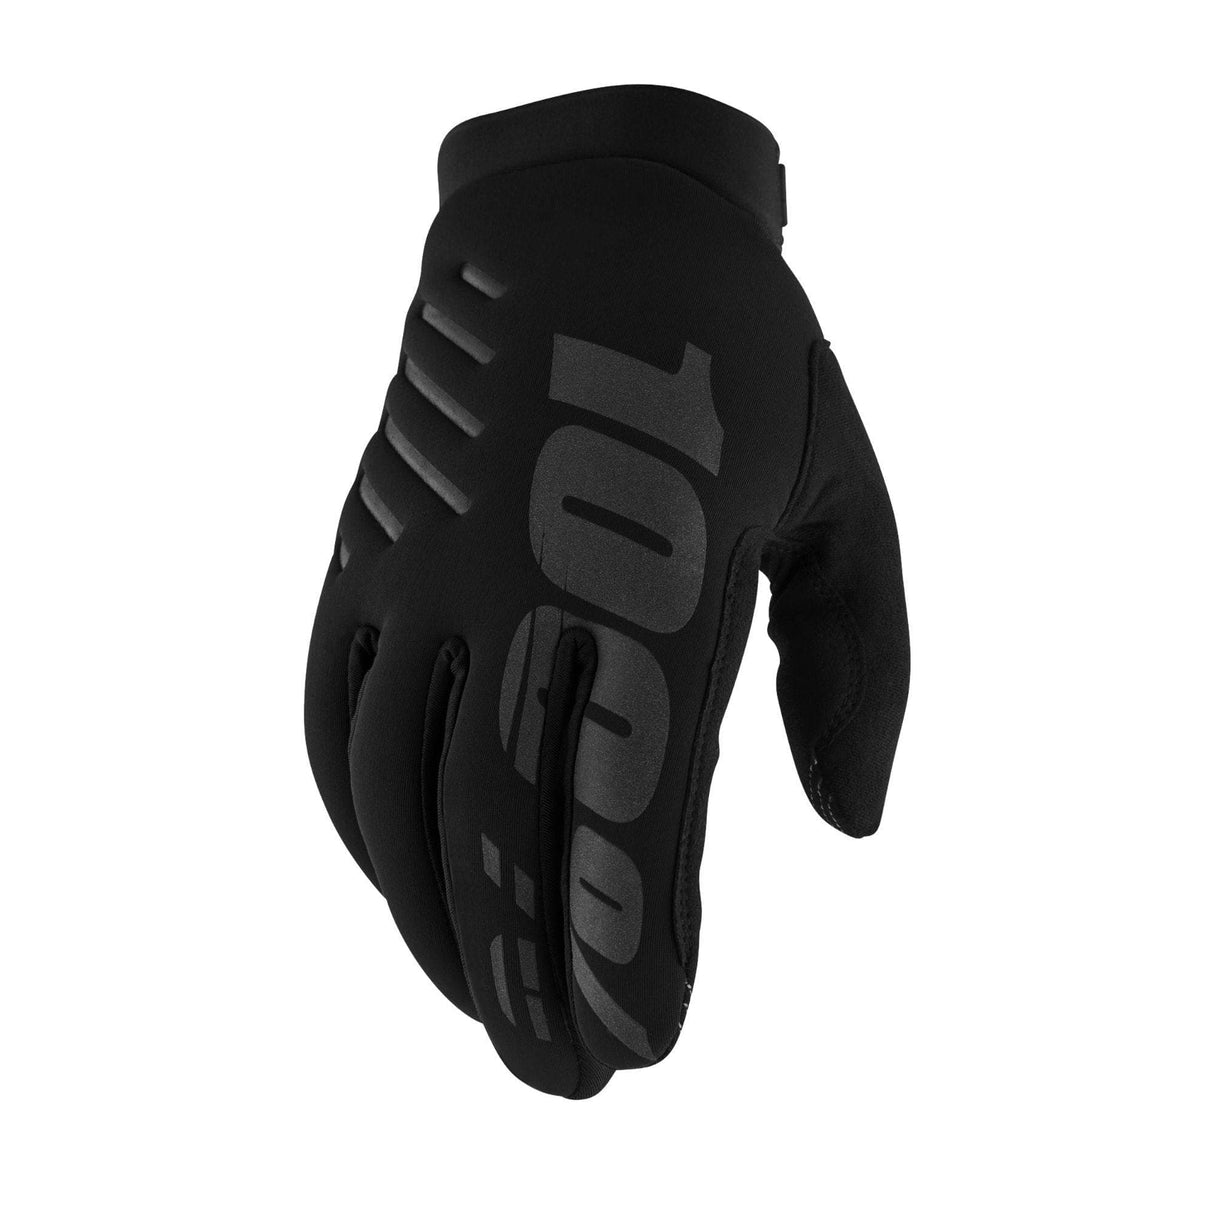 100% Brisker Cold Weather Glove - Black / Grey - XL